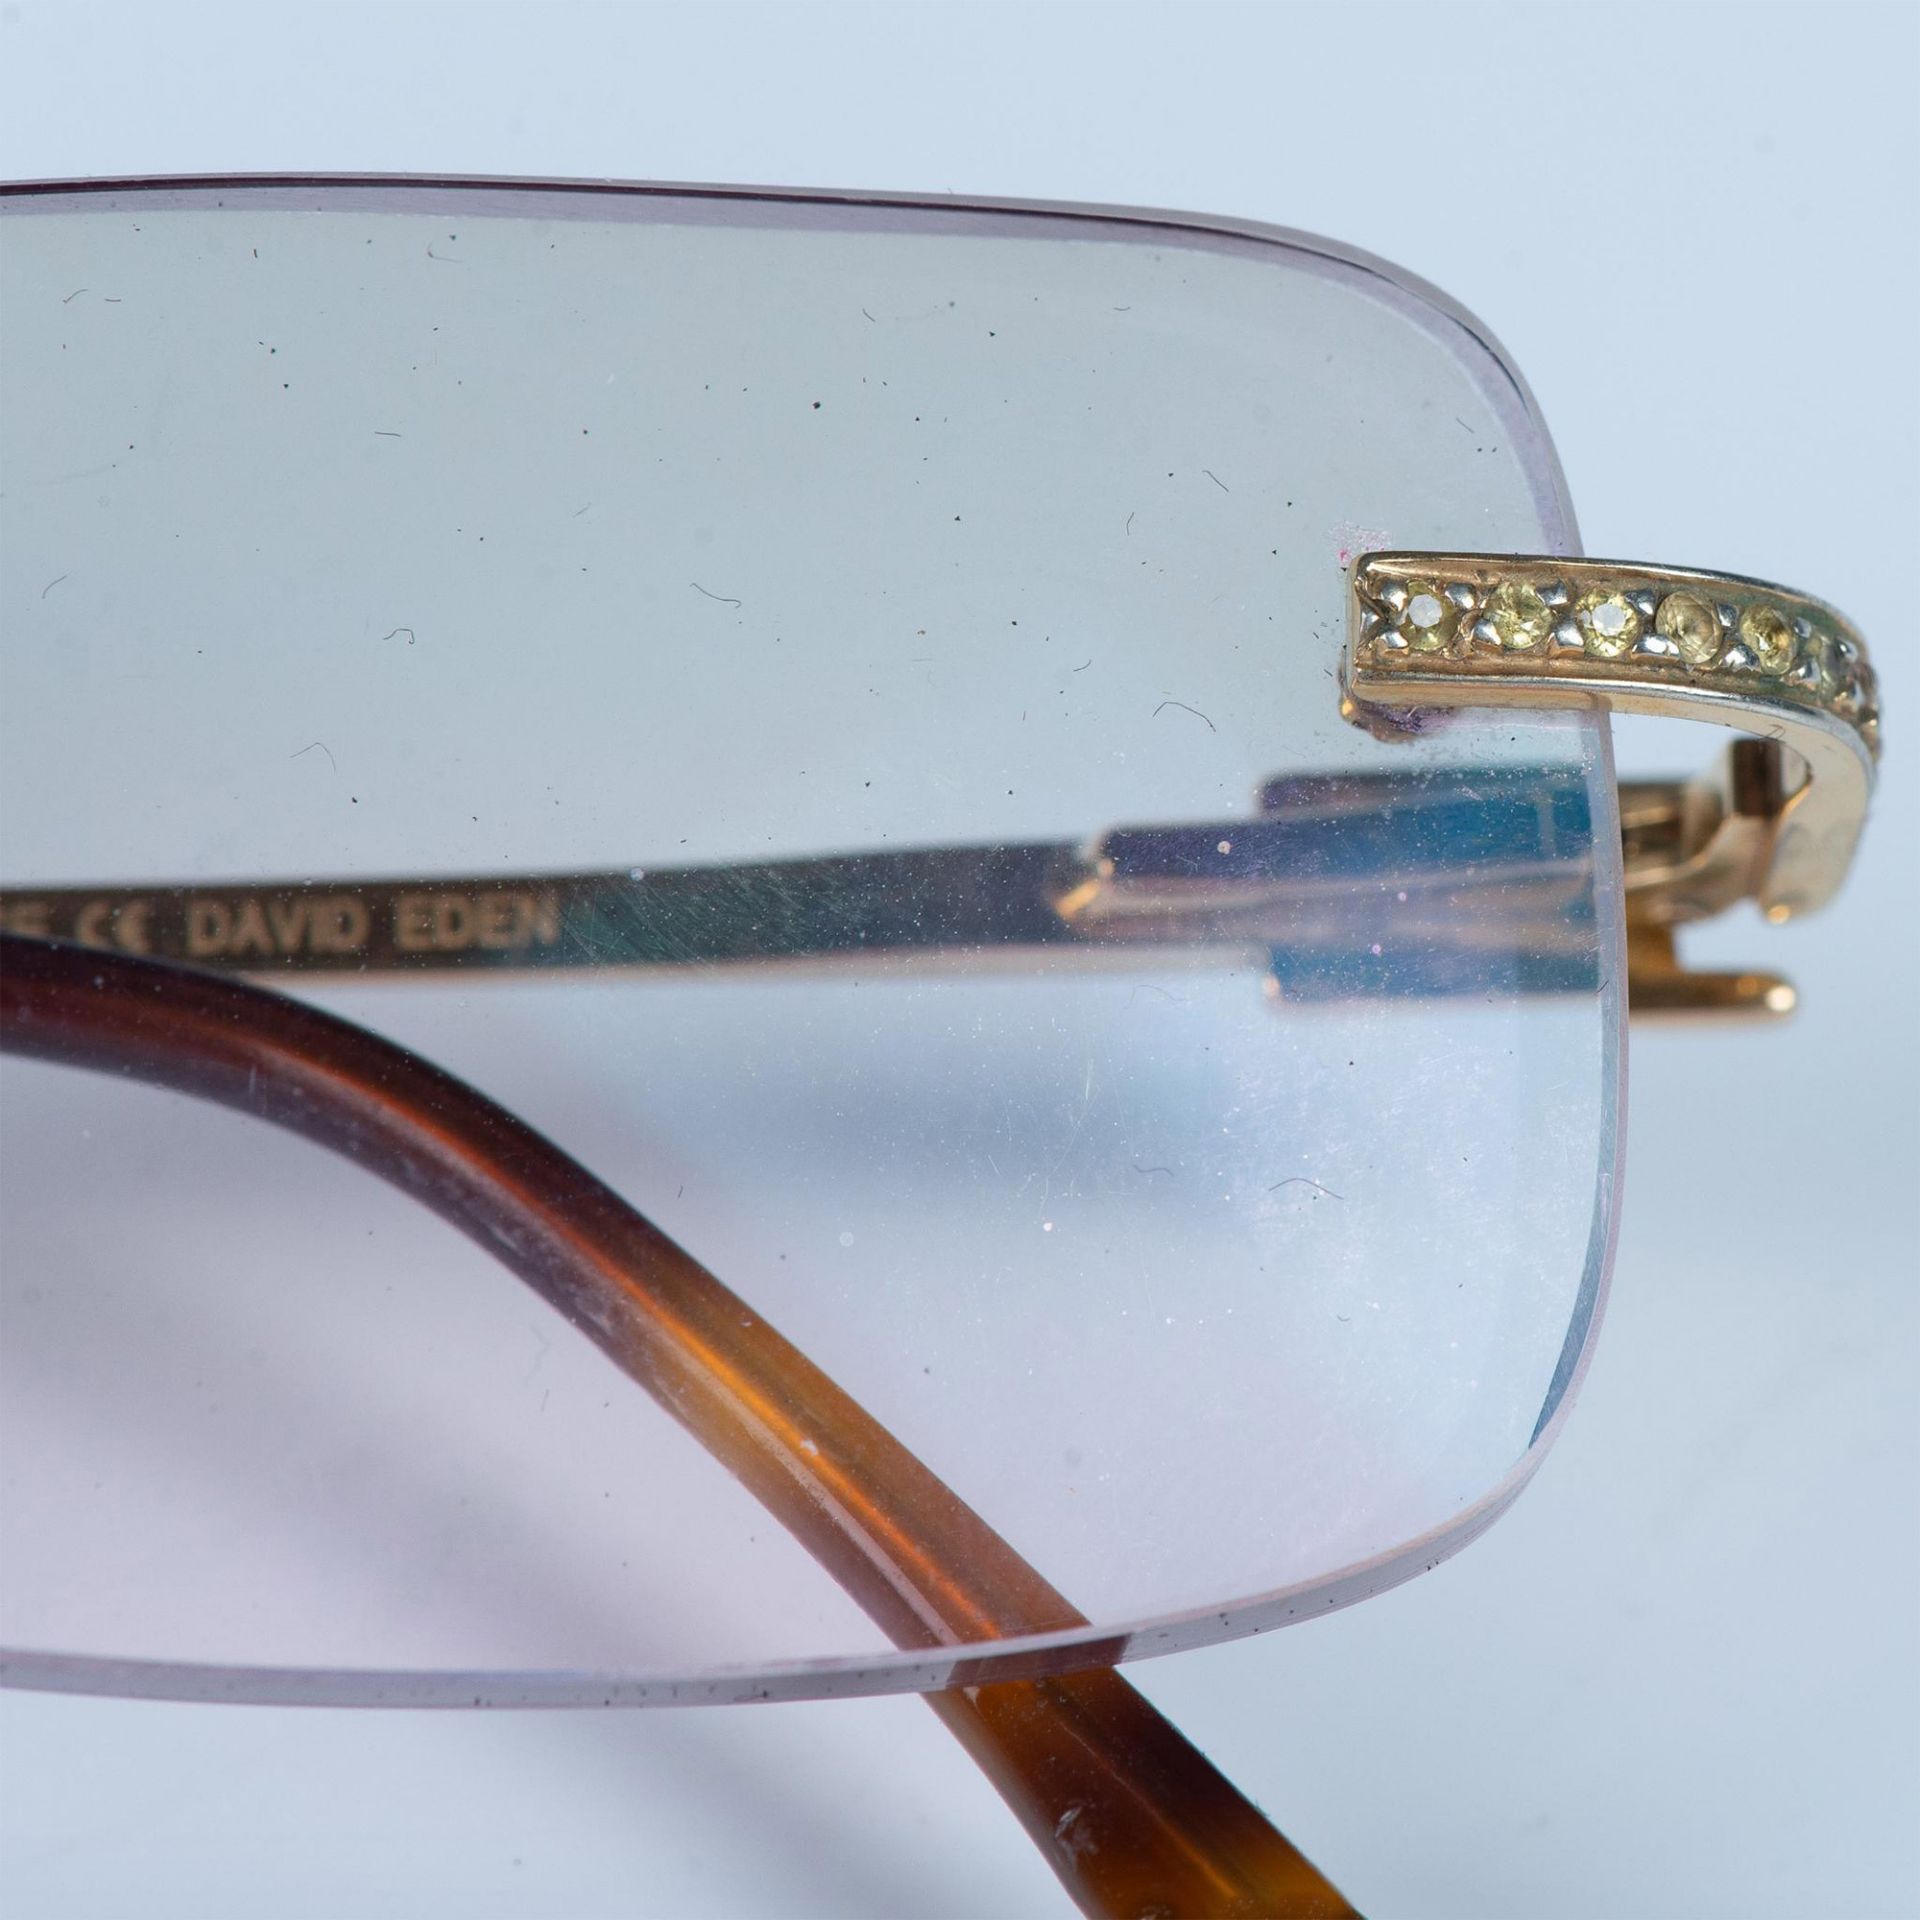 David Eden Eyeglass Frames - Image 5 of 9